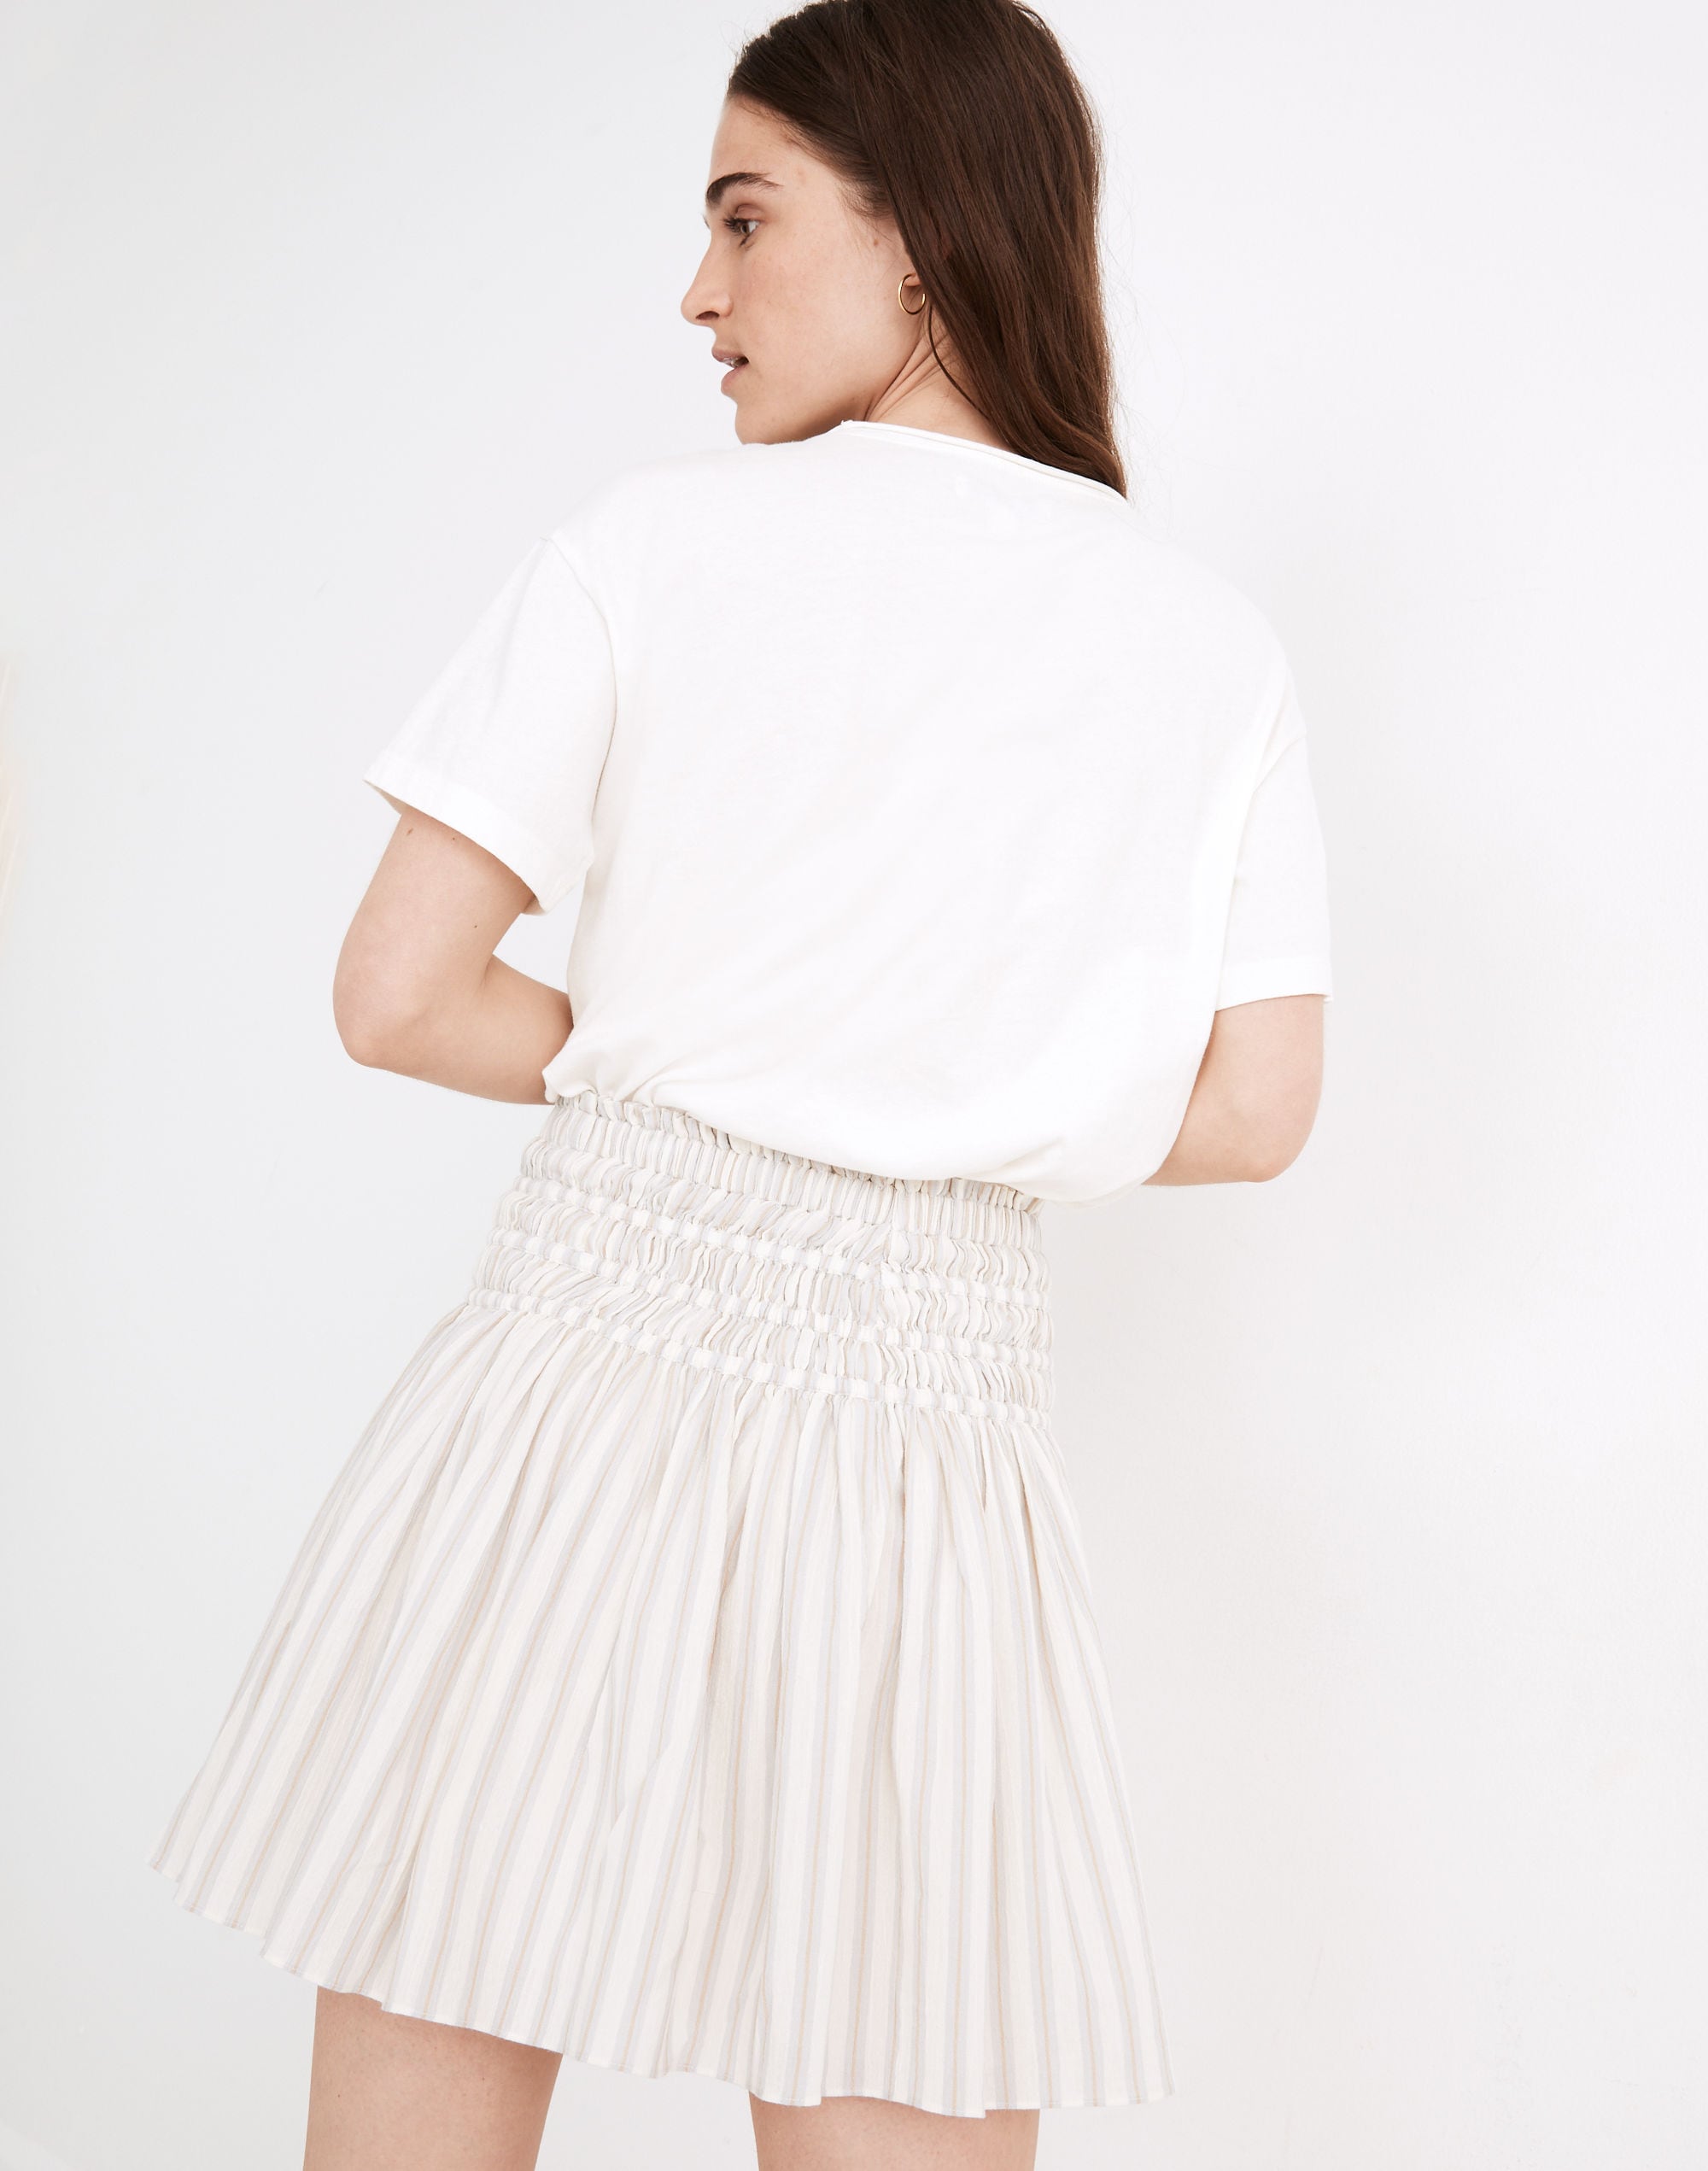 Smocked Pull-On Mini Skirt in Stripe